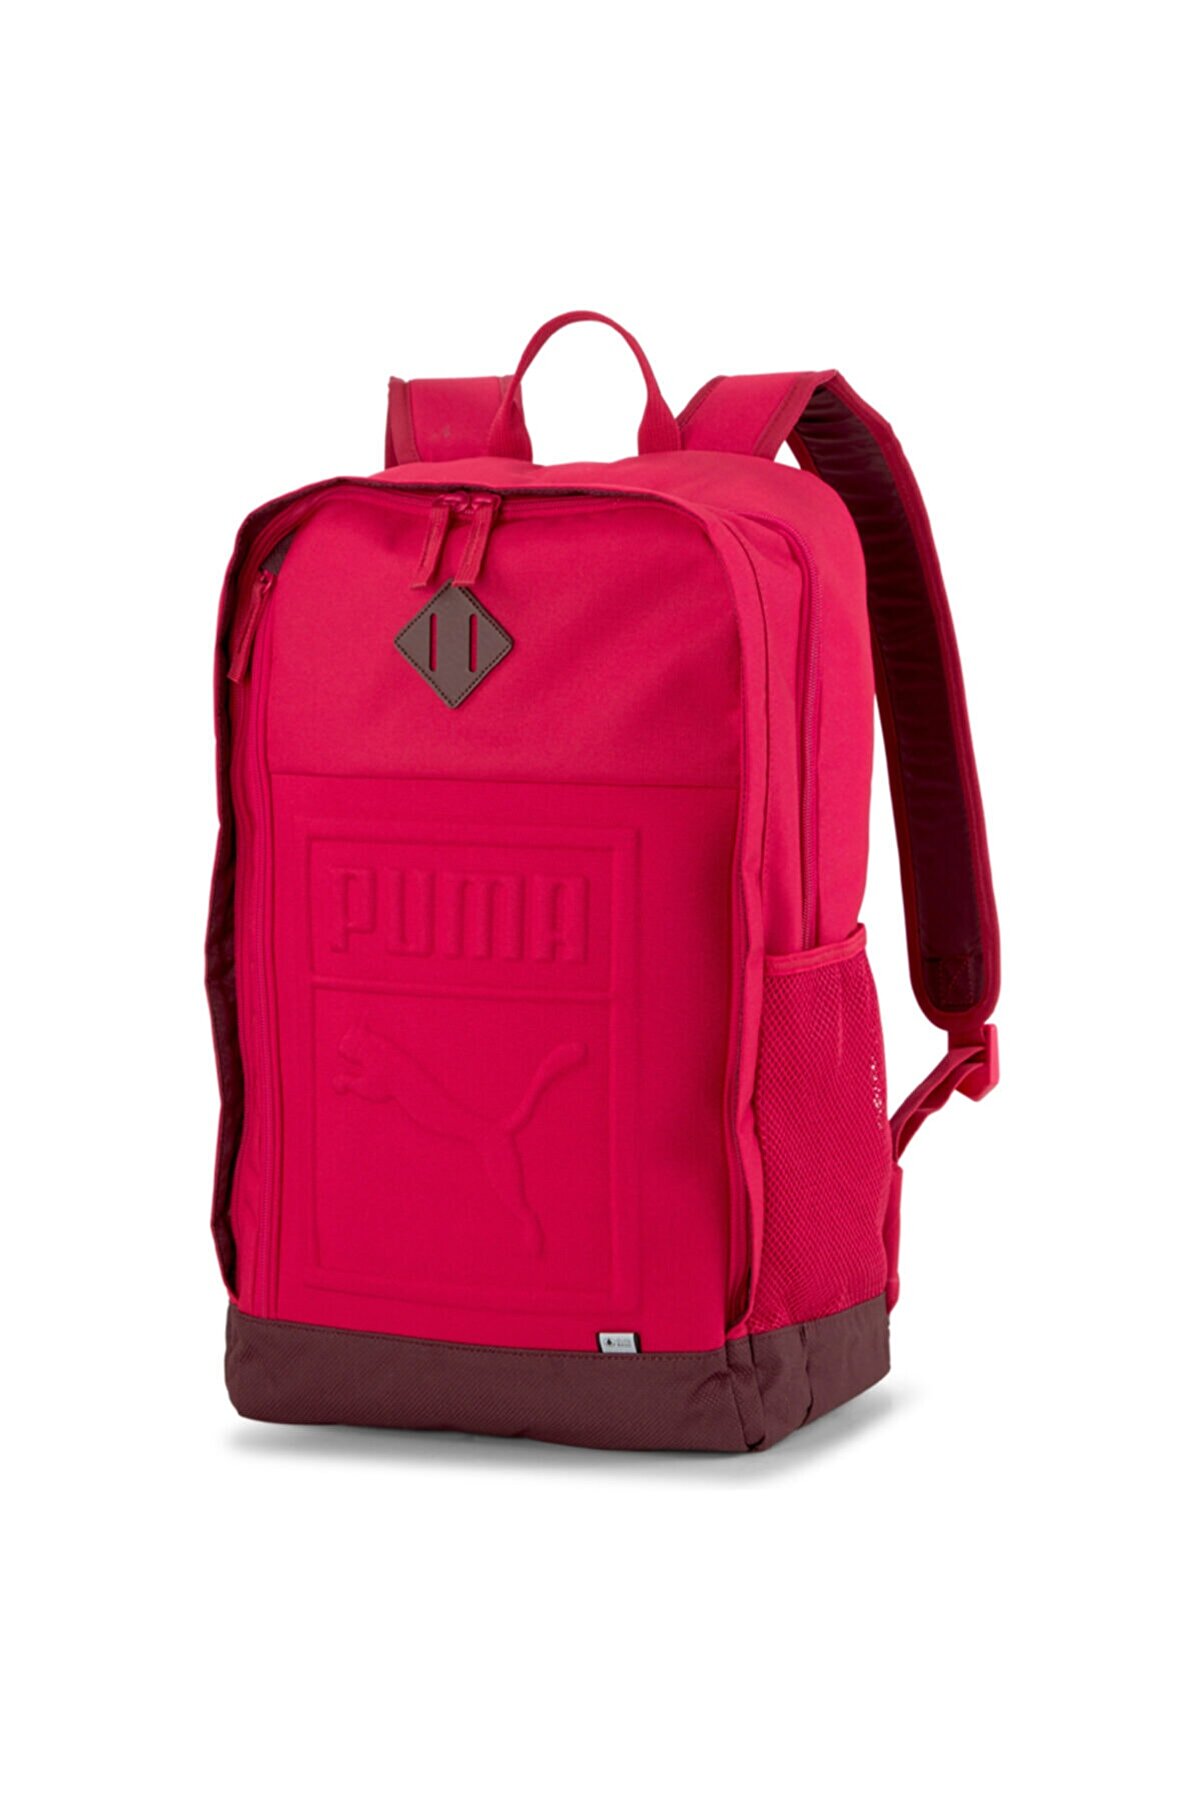 Puma S Backpack Persian Unisex Kırmızı Günlük Stil Sırt Çantası 07558120